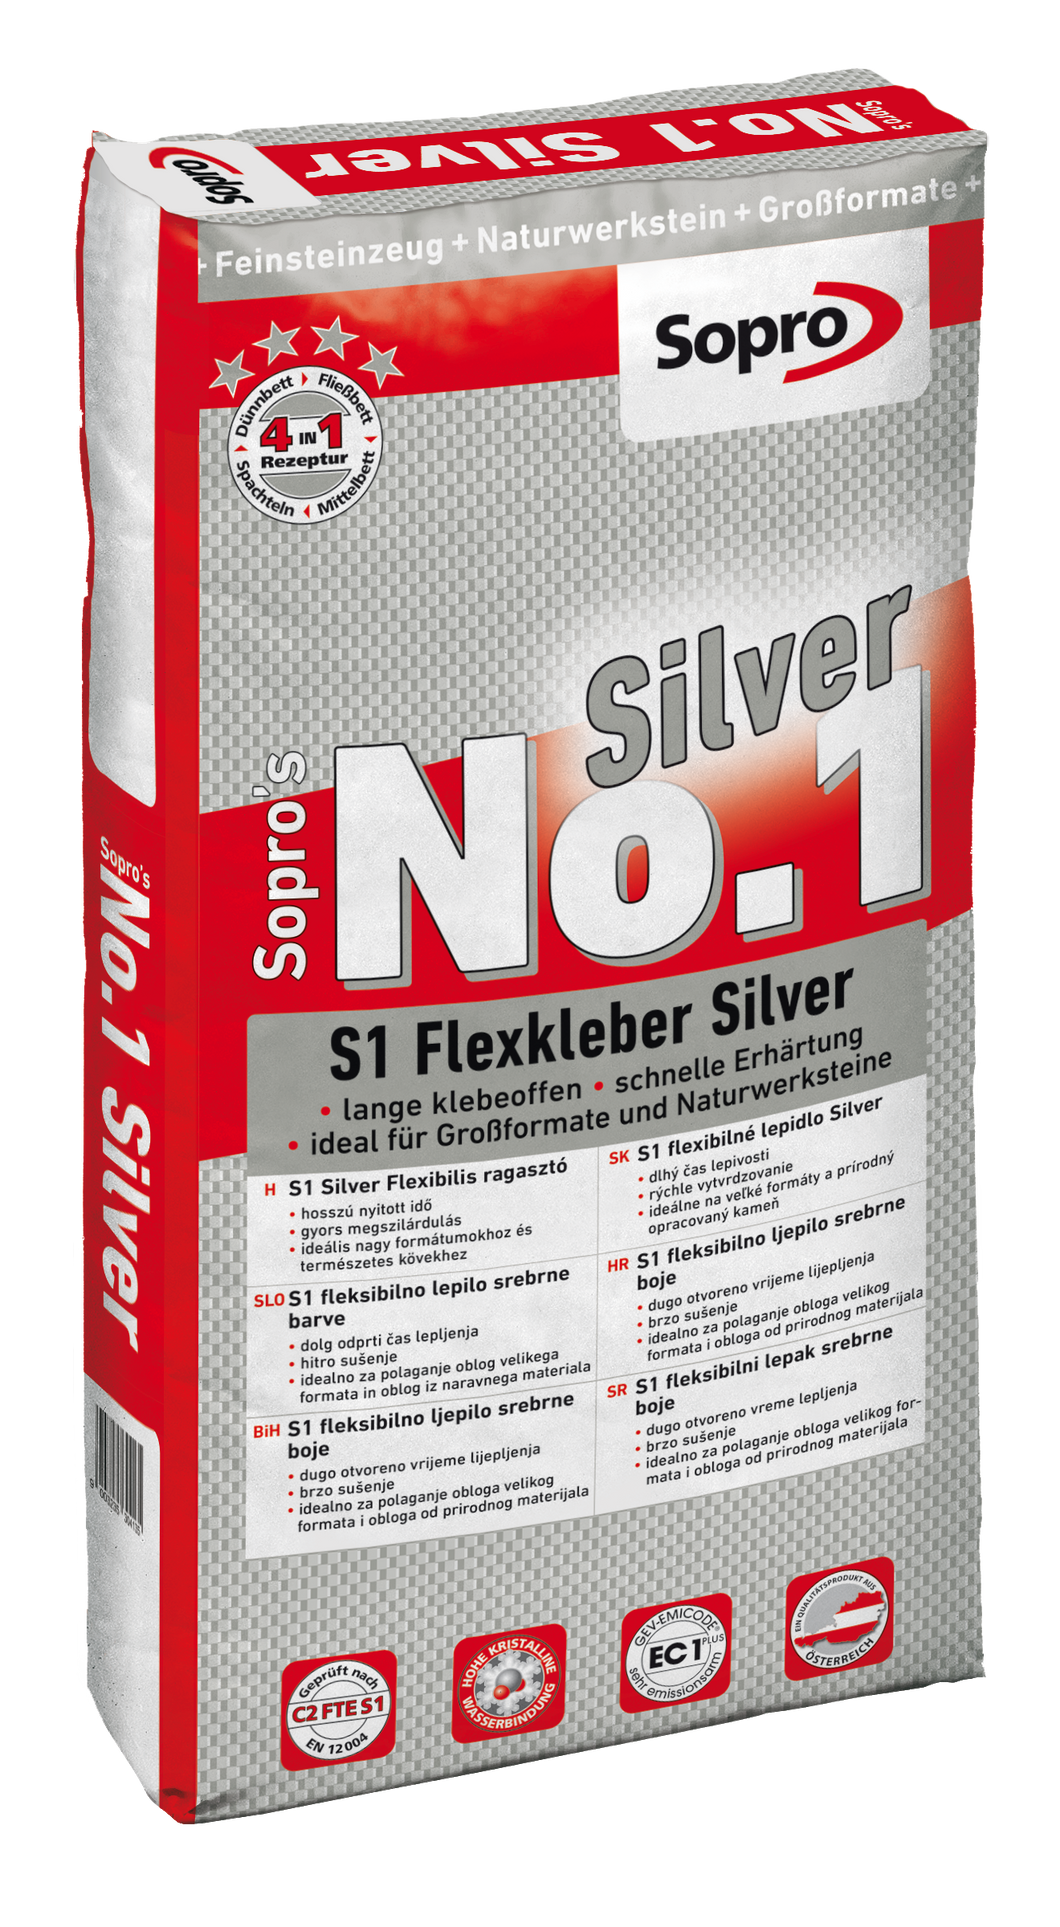 Sopro's No.1 Silver